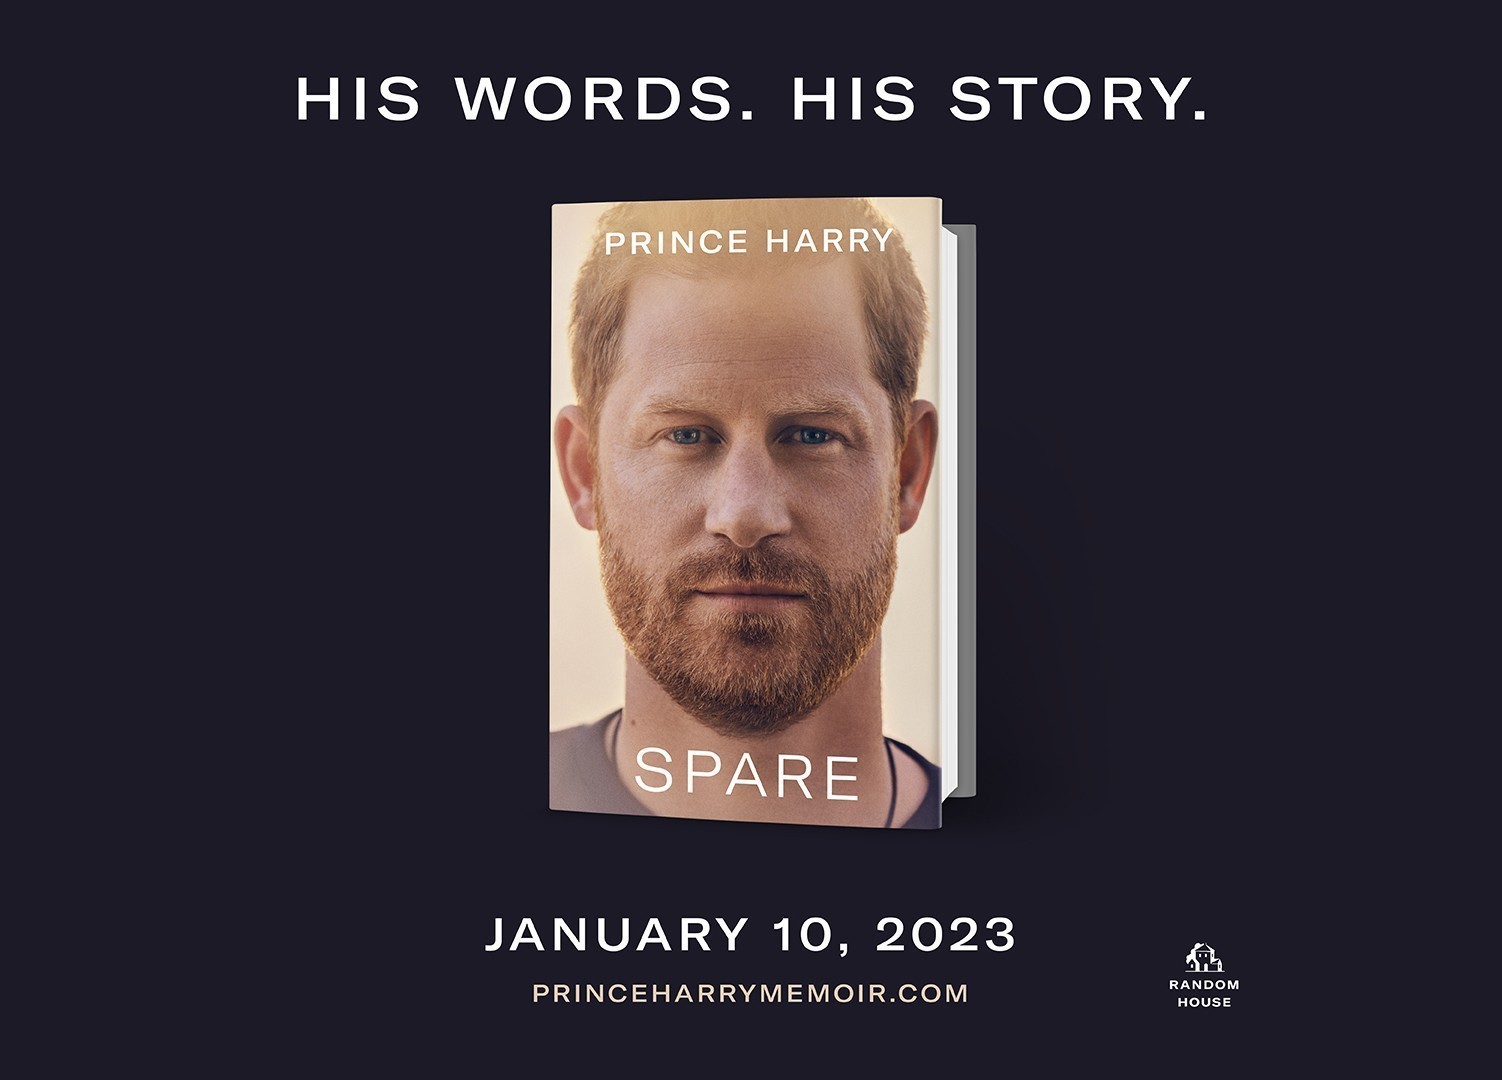 Αγωνία και εκατομμύρια για το βιβλίο του πρίγκιπα Χάρι που αναμένεται ως το best-seller του 2023